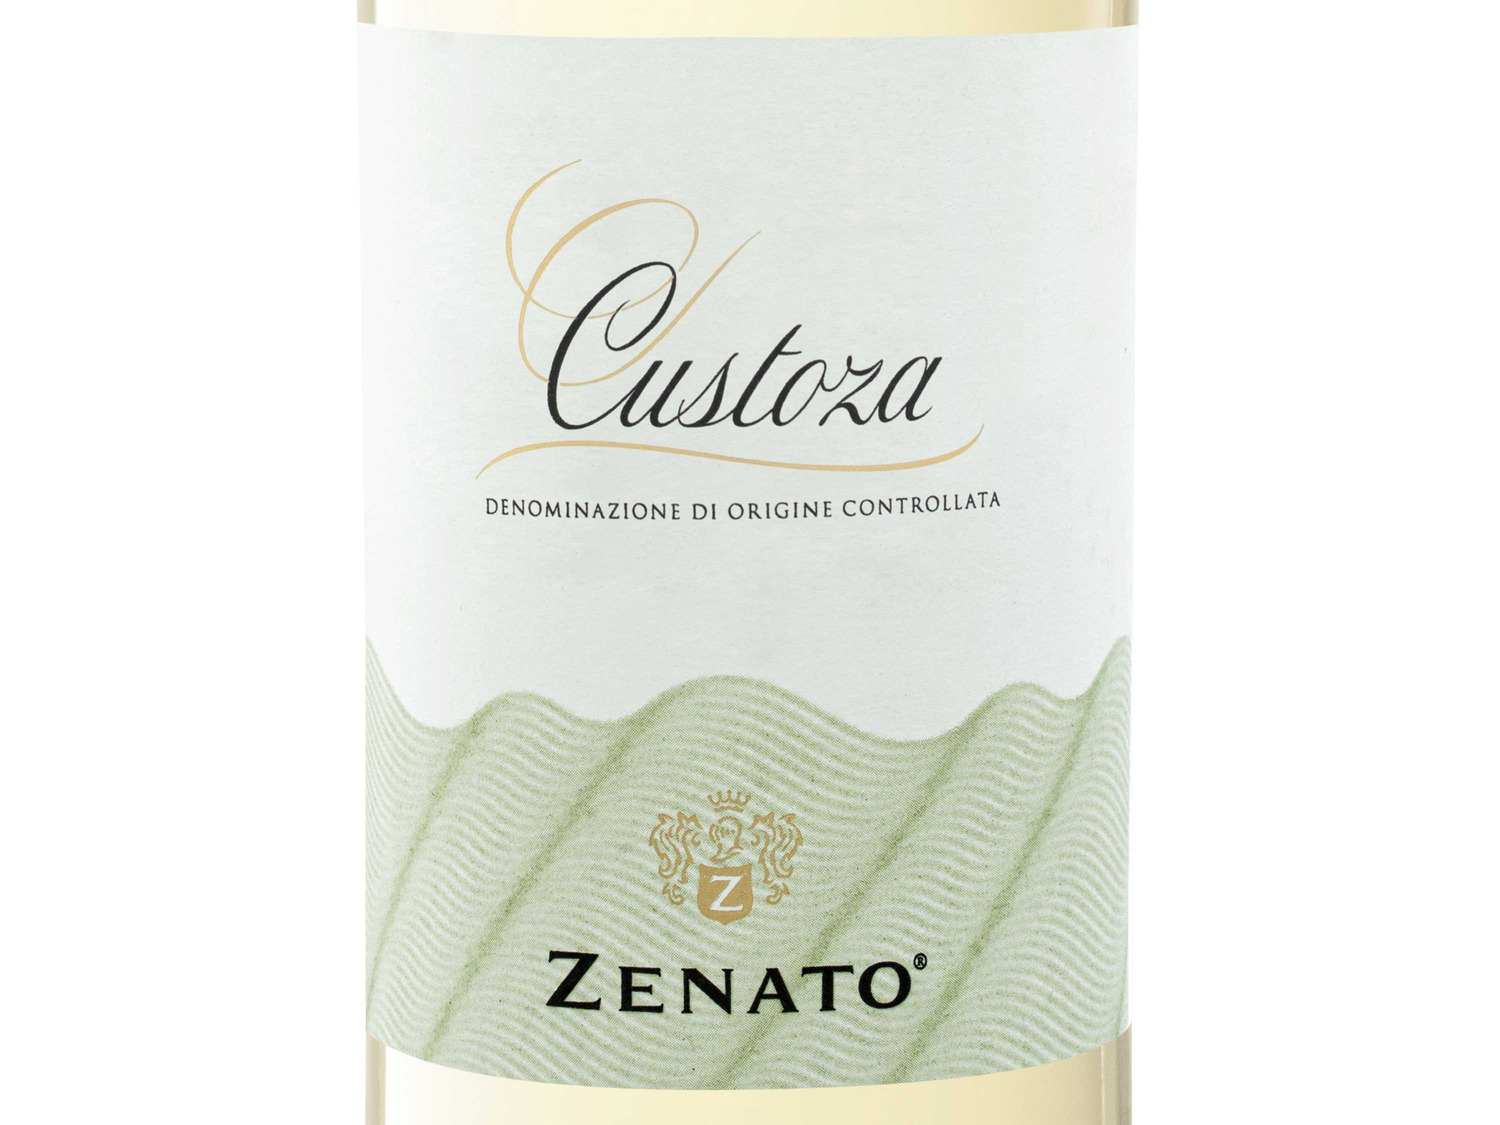 Zenato Weißwein 2022 DOC LIDL | Custoza trocken,